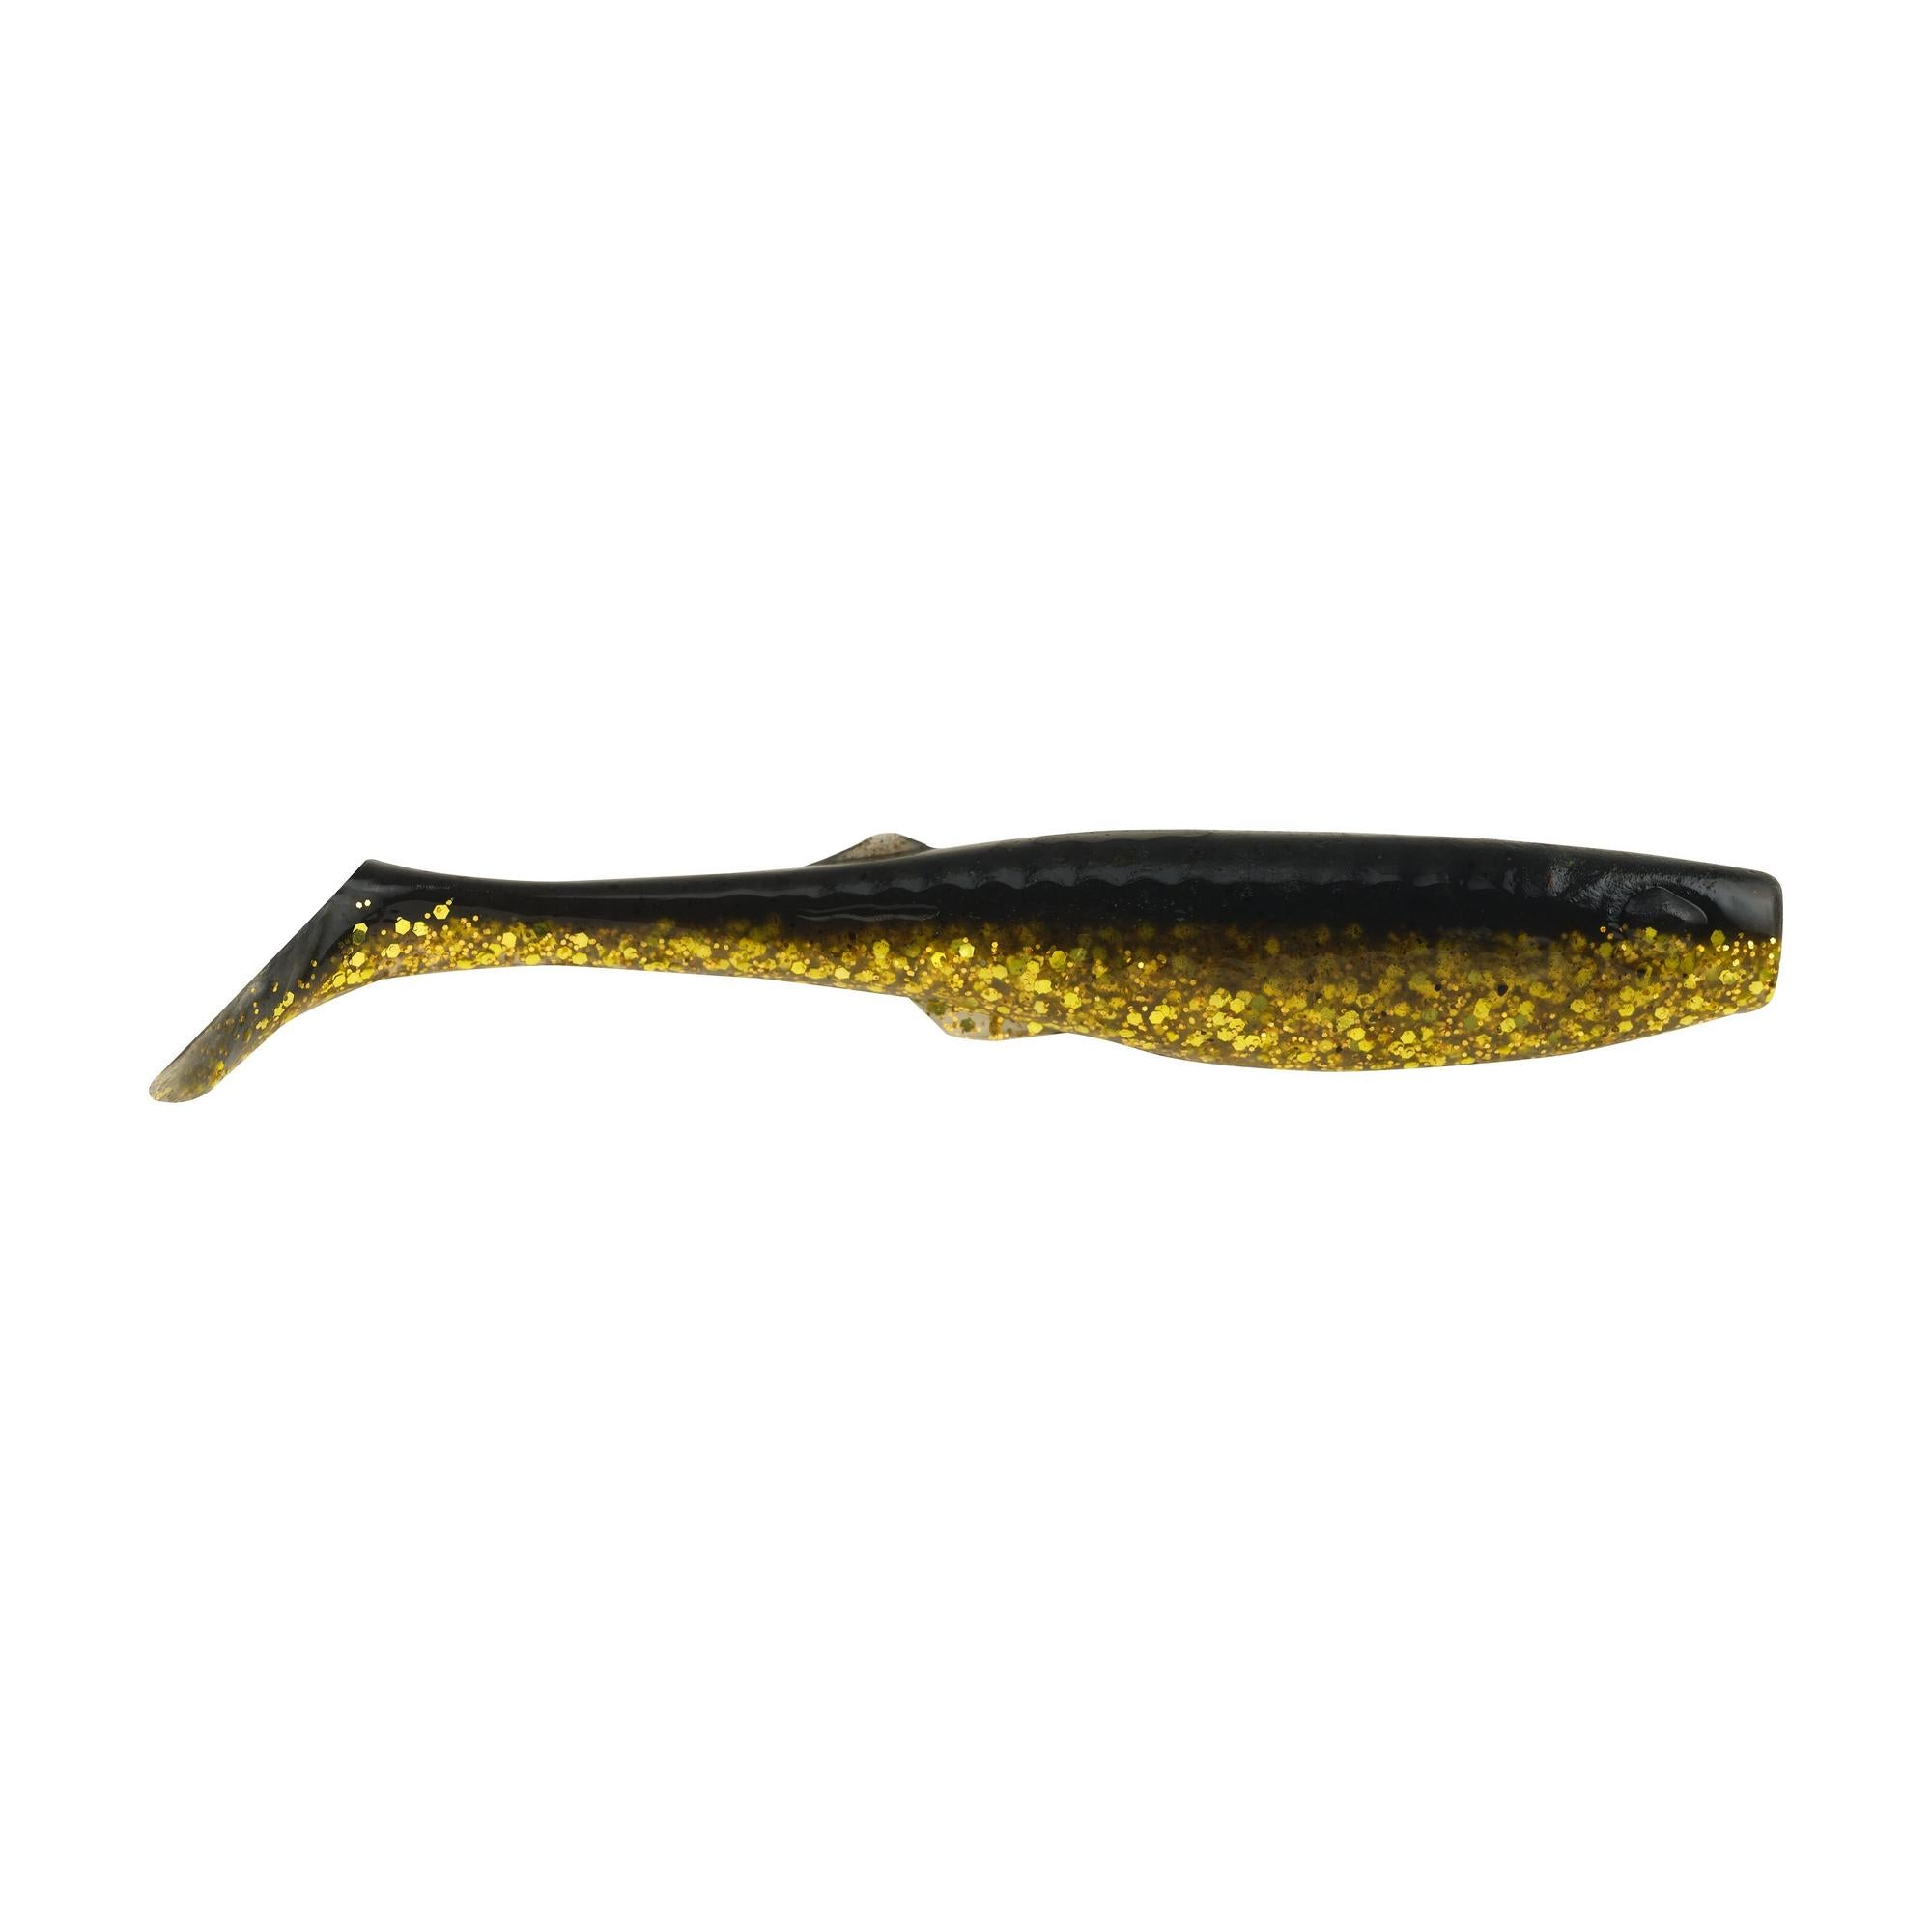 Berkley Gulp!® Saltwater Paddleshad